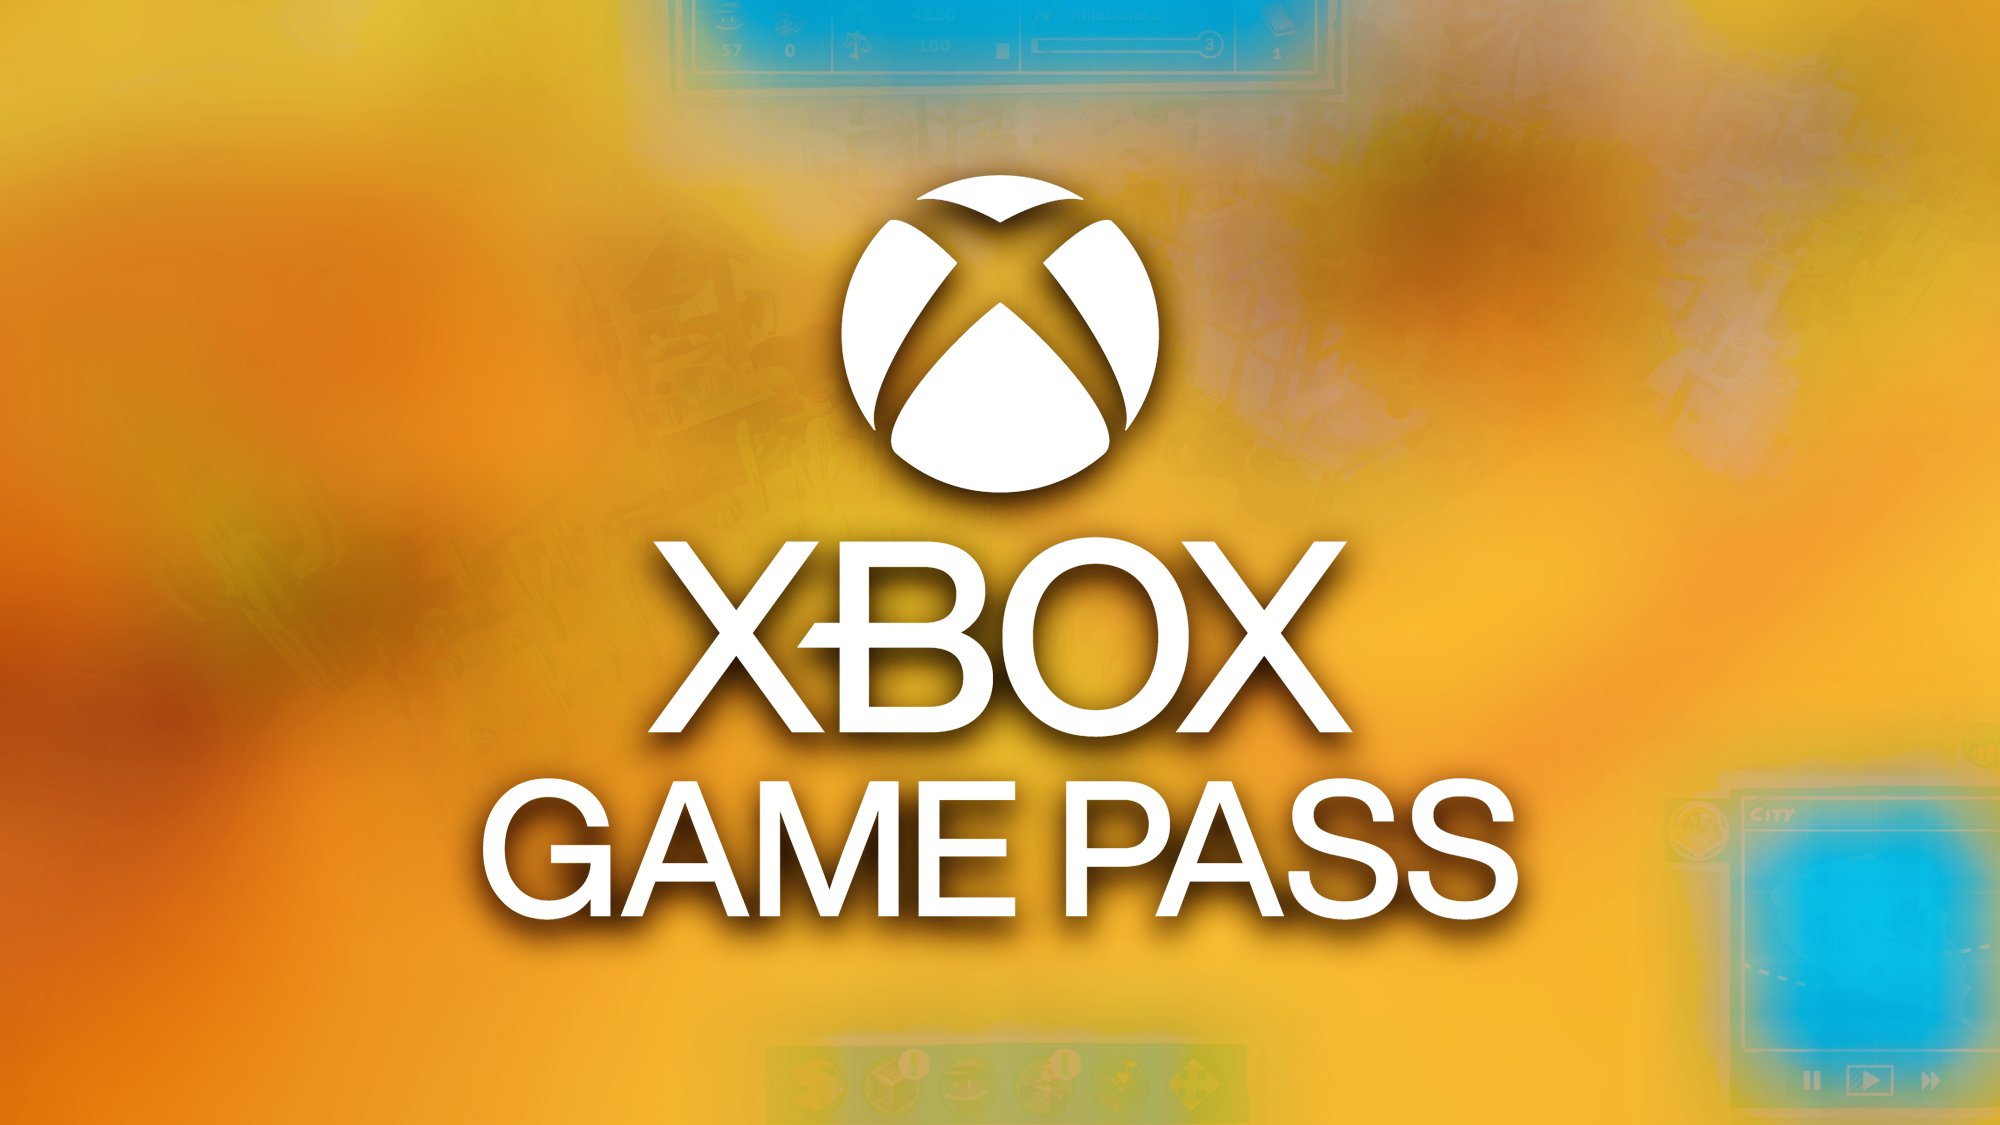 Xbox Game Pass : trois nouveaux jeux dispo, avec une licence appréciée